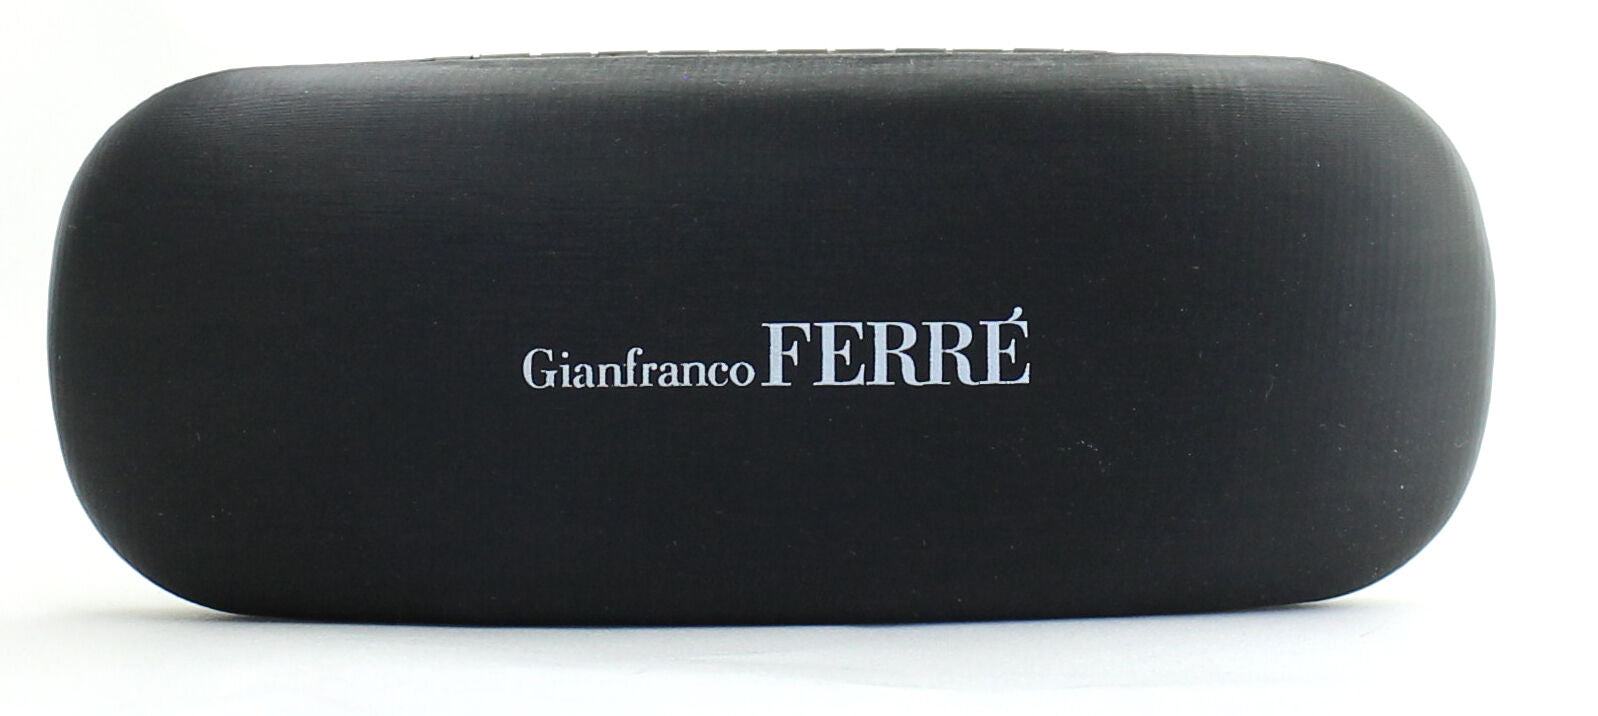 GIANFRANCO FERRE FF15805 Eyewear FRAMES Eyeglasses RX Optical Glasses ITALY-BNIB